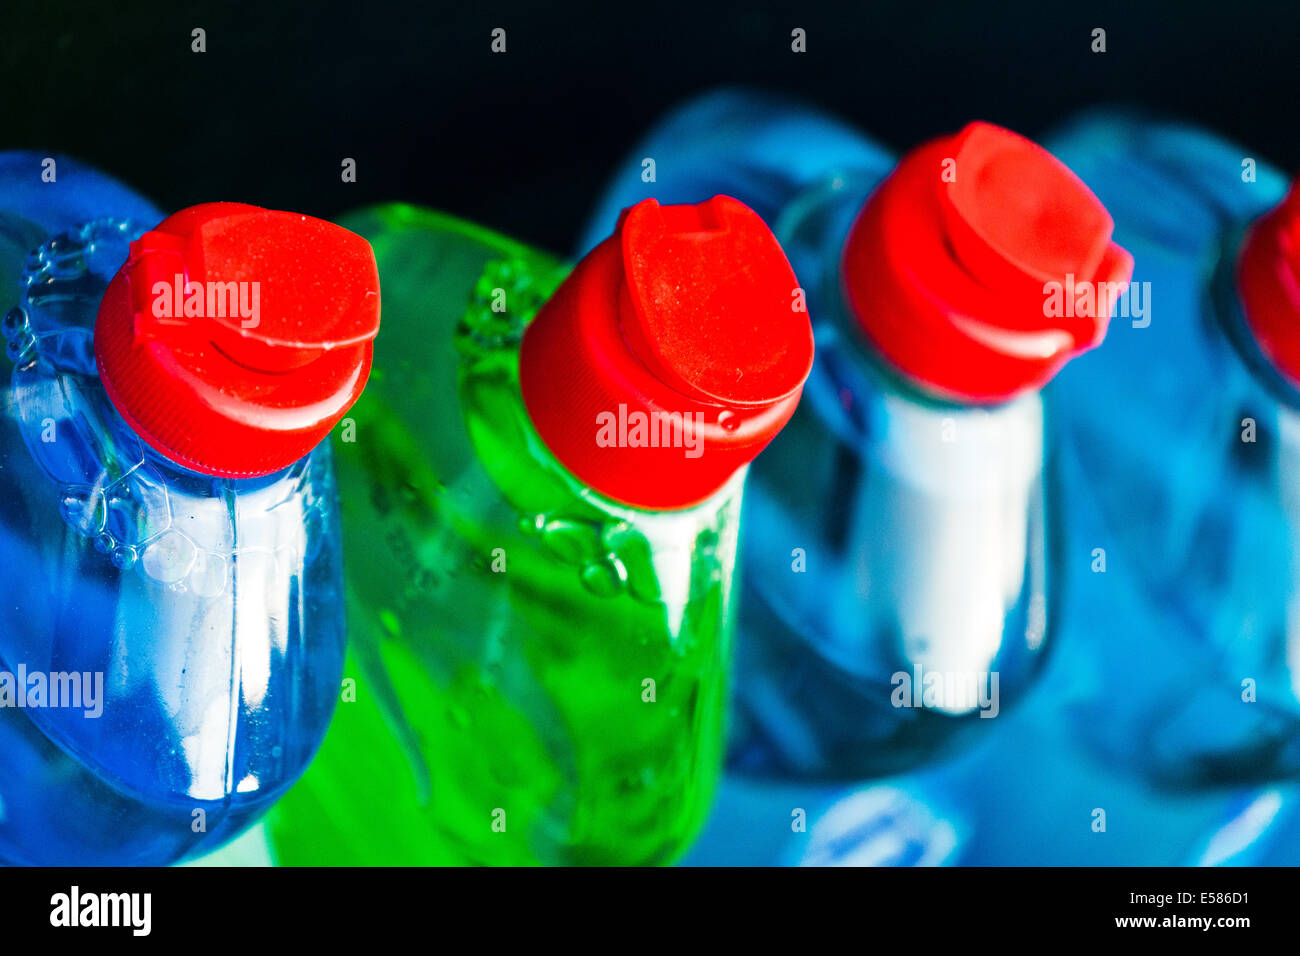 washing up liquid bottles. England UK Stock Photo